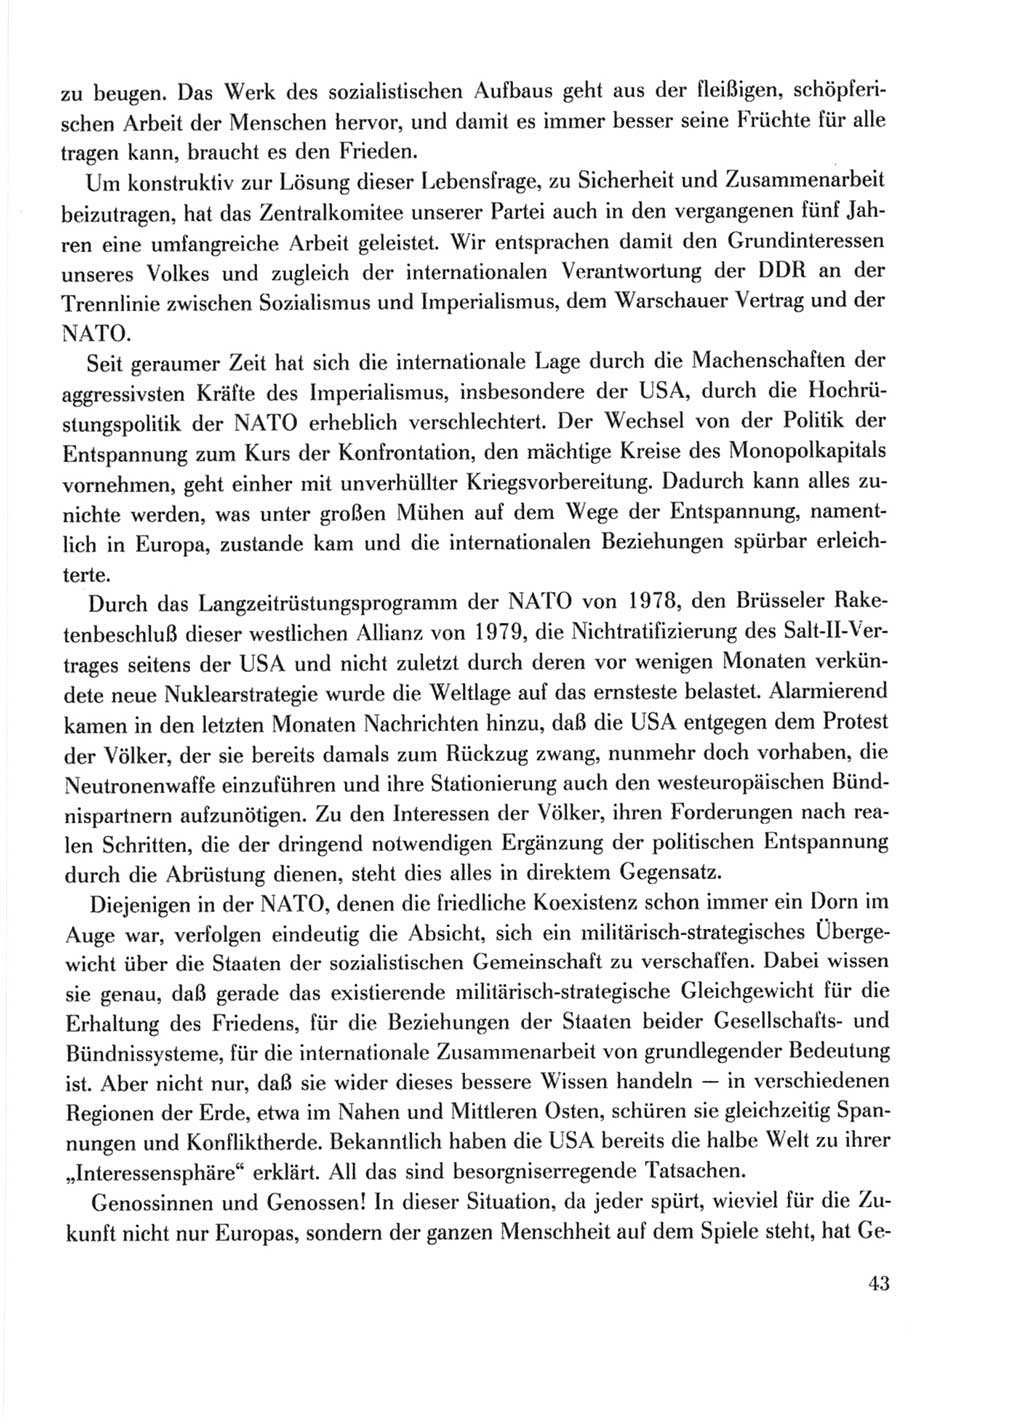 Protokoll der Verhandlungen des Ⅹ. Parteitages der Sozialistischen Einheitspartei Deutschlands (SED) [Deutsche Demokratische Republik (DDR)] 1981, Band 1, Seite 43 (Prot. Verh. Ⅹ. PT SED DDR 1981, Bd. 1, S. 43)